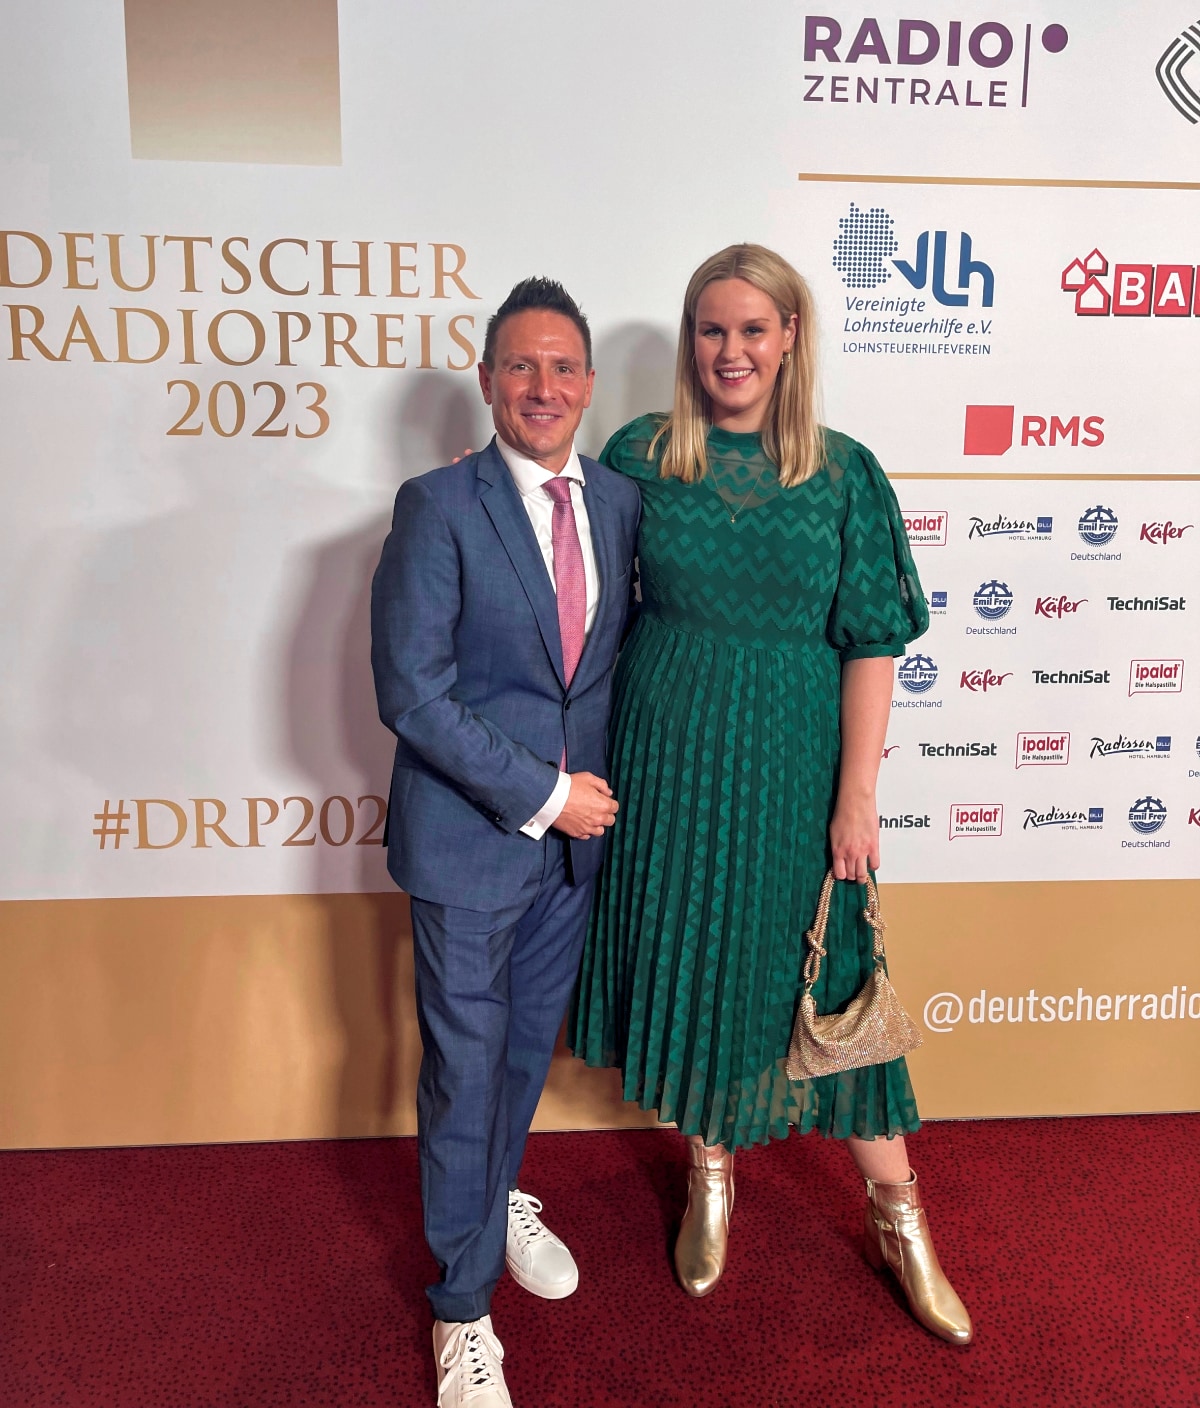 Radio TEDDY-Programmchef Roland Lehmann mit Radio TEDDY-Moderatorin Isabelle Ihden beim Deutschen Radiopreis 2023 (Bild: @ Radio TEDDY)